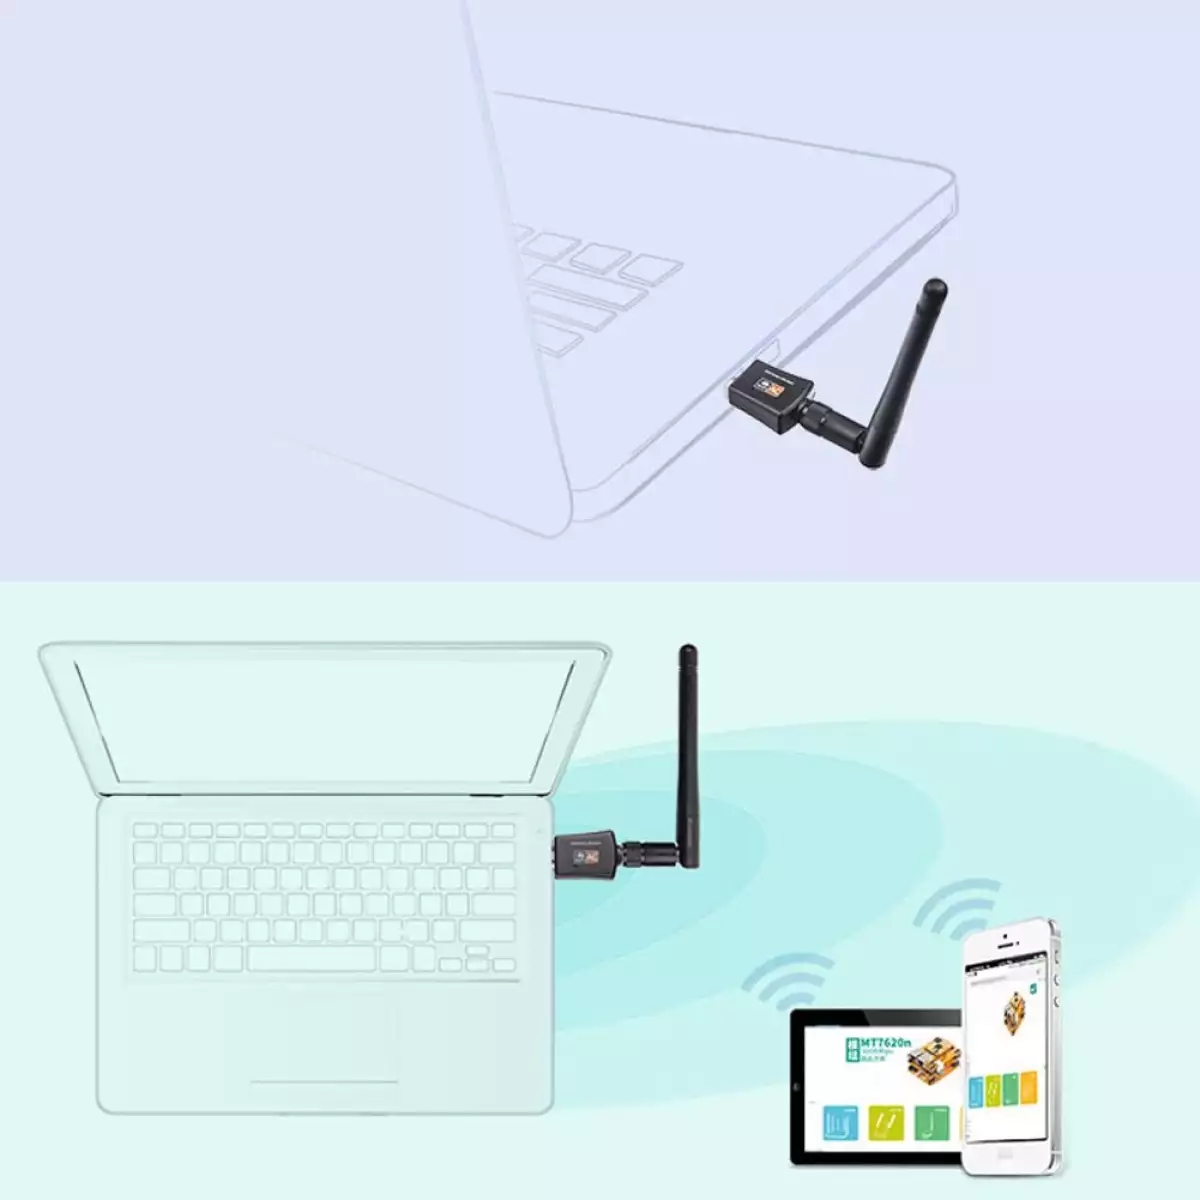 Bộ Chuyển Đổi USB thu Wifi 600Mbps băng tần kép 5GHz không dây, Biến laptop máy bàn thành điểm thu phát wifi tốc đô cao Chuẩn 5G